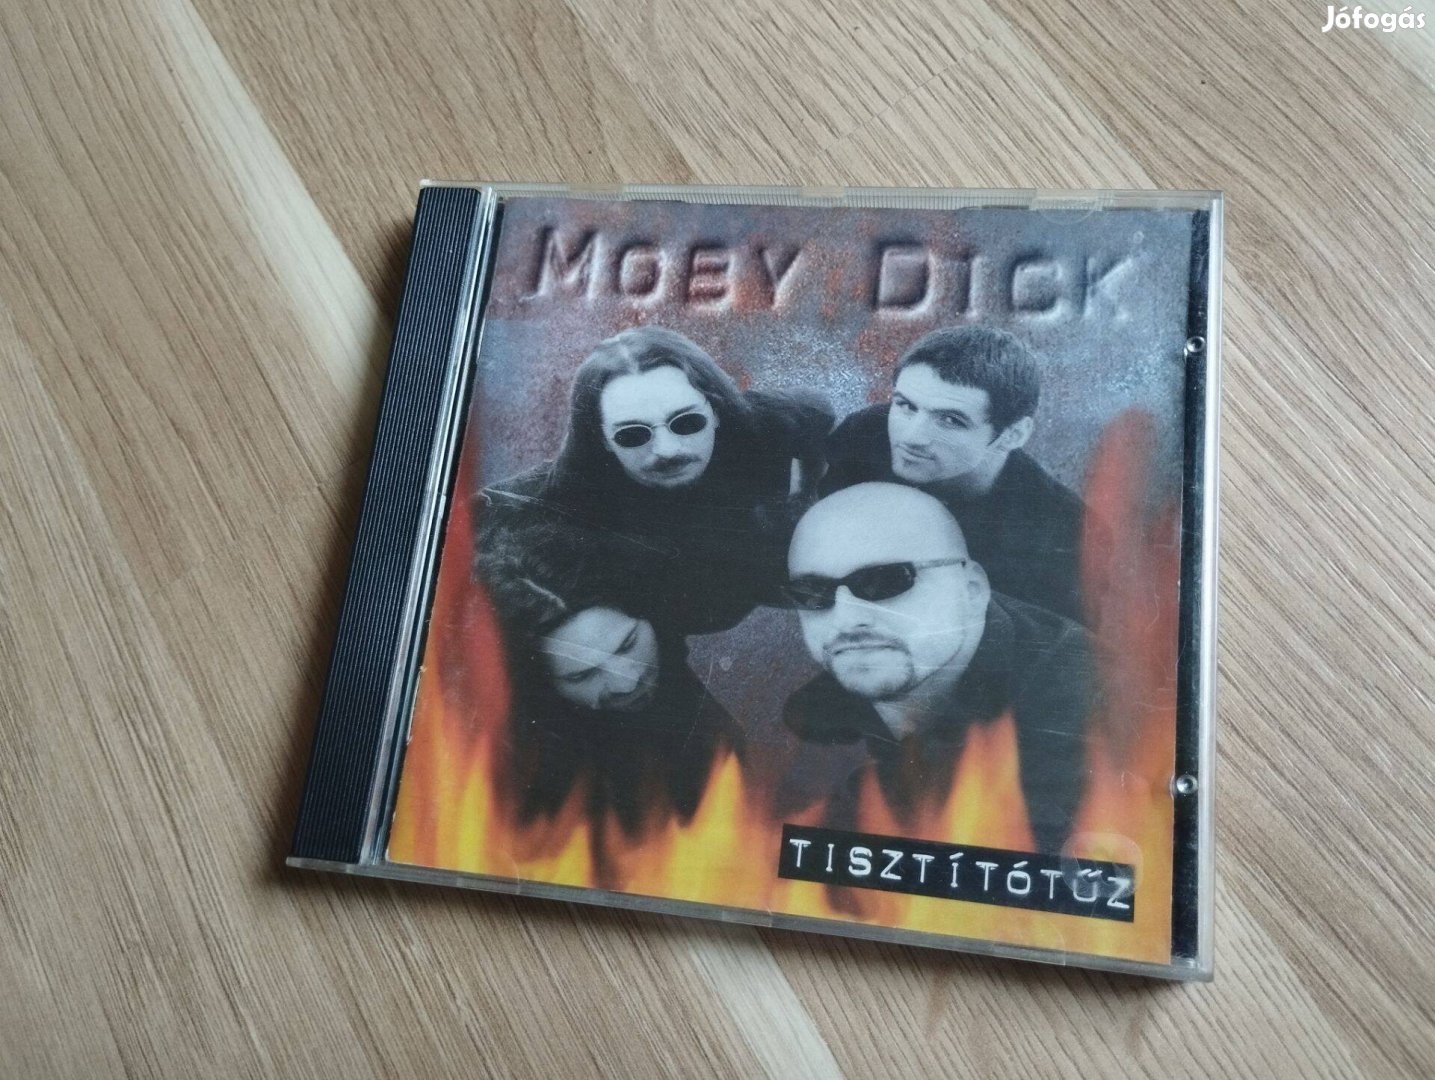 Moby Dick -Tisztítótűz cd